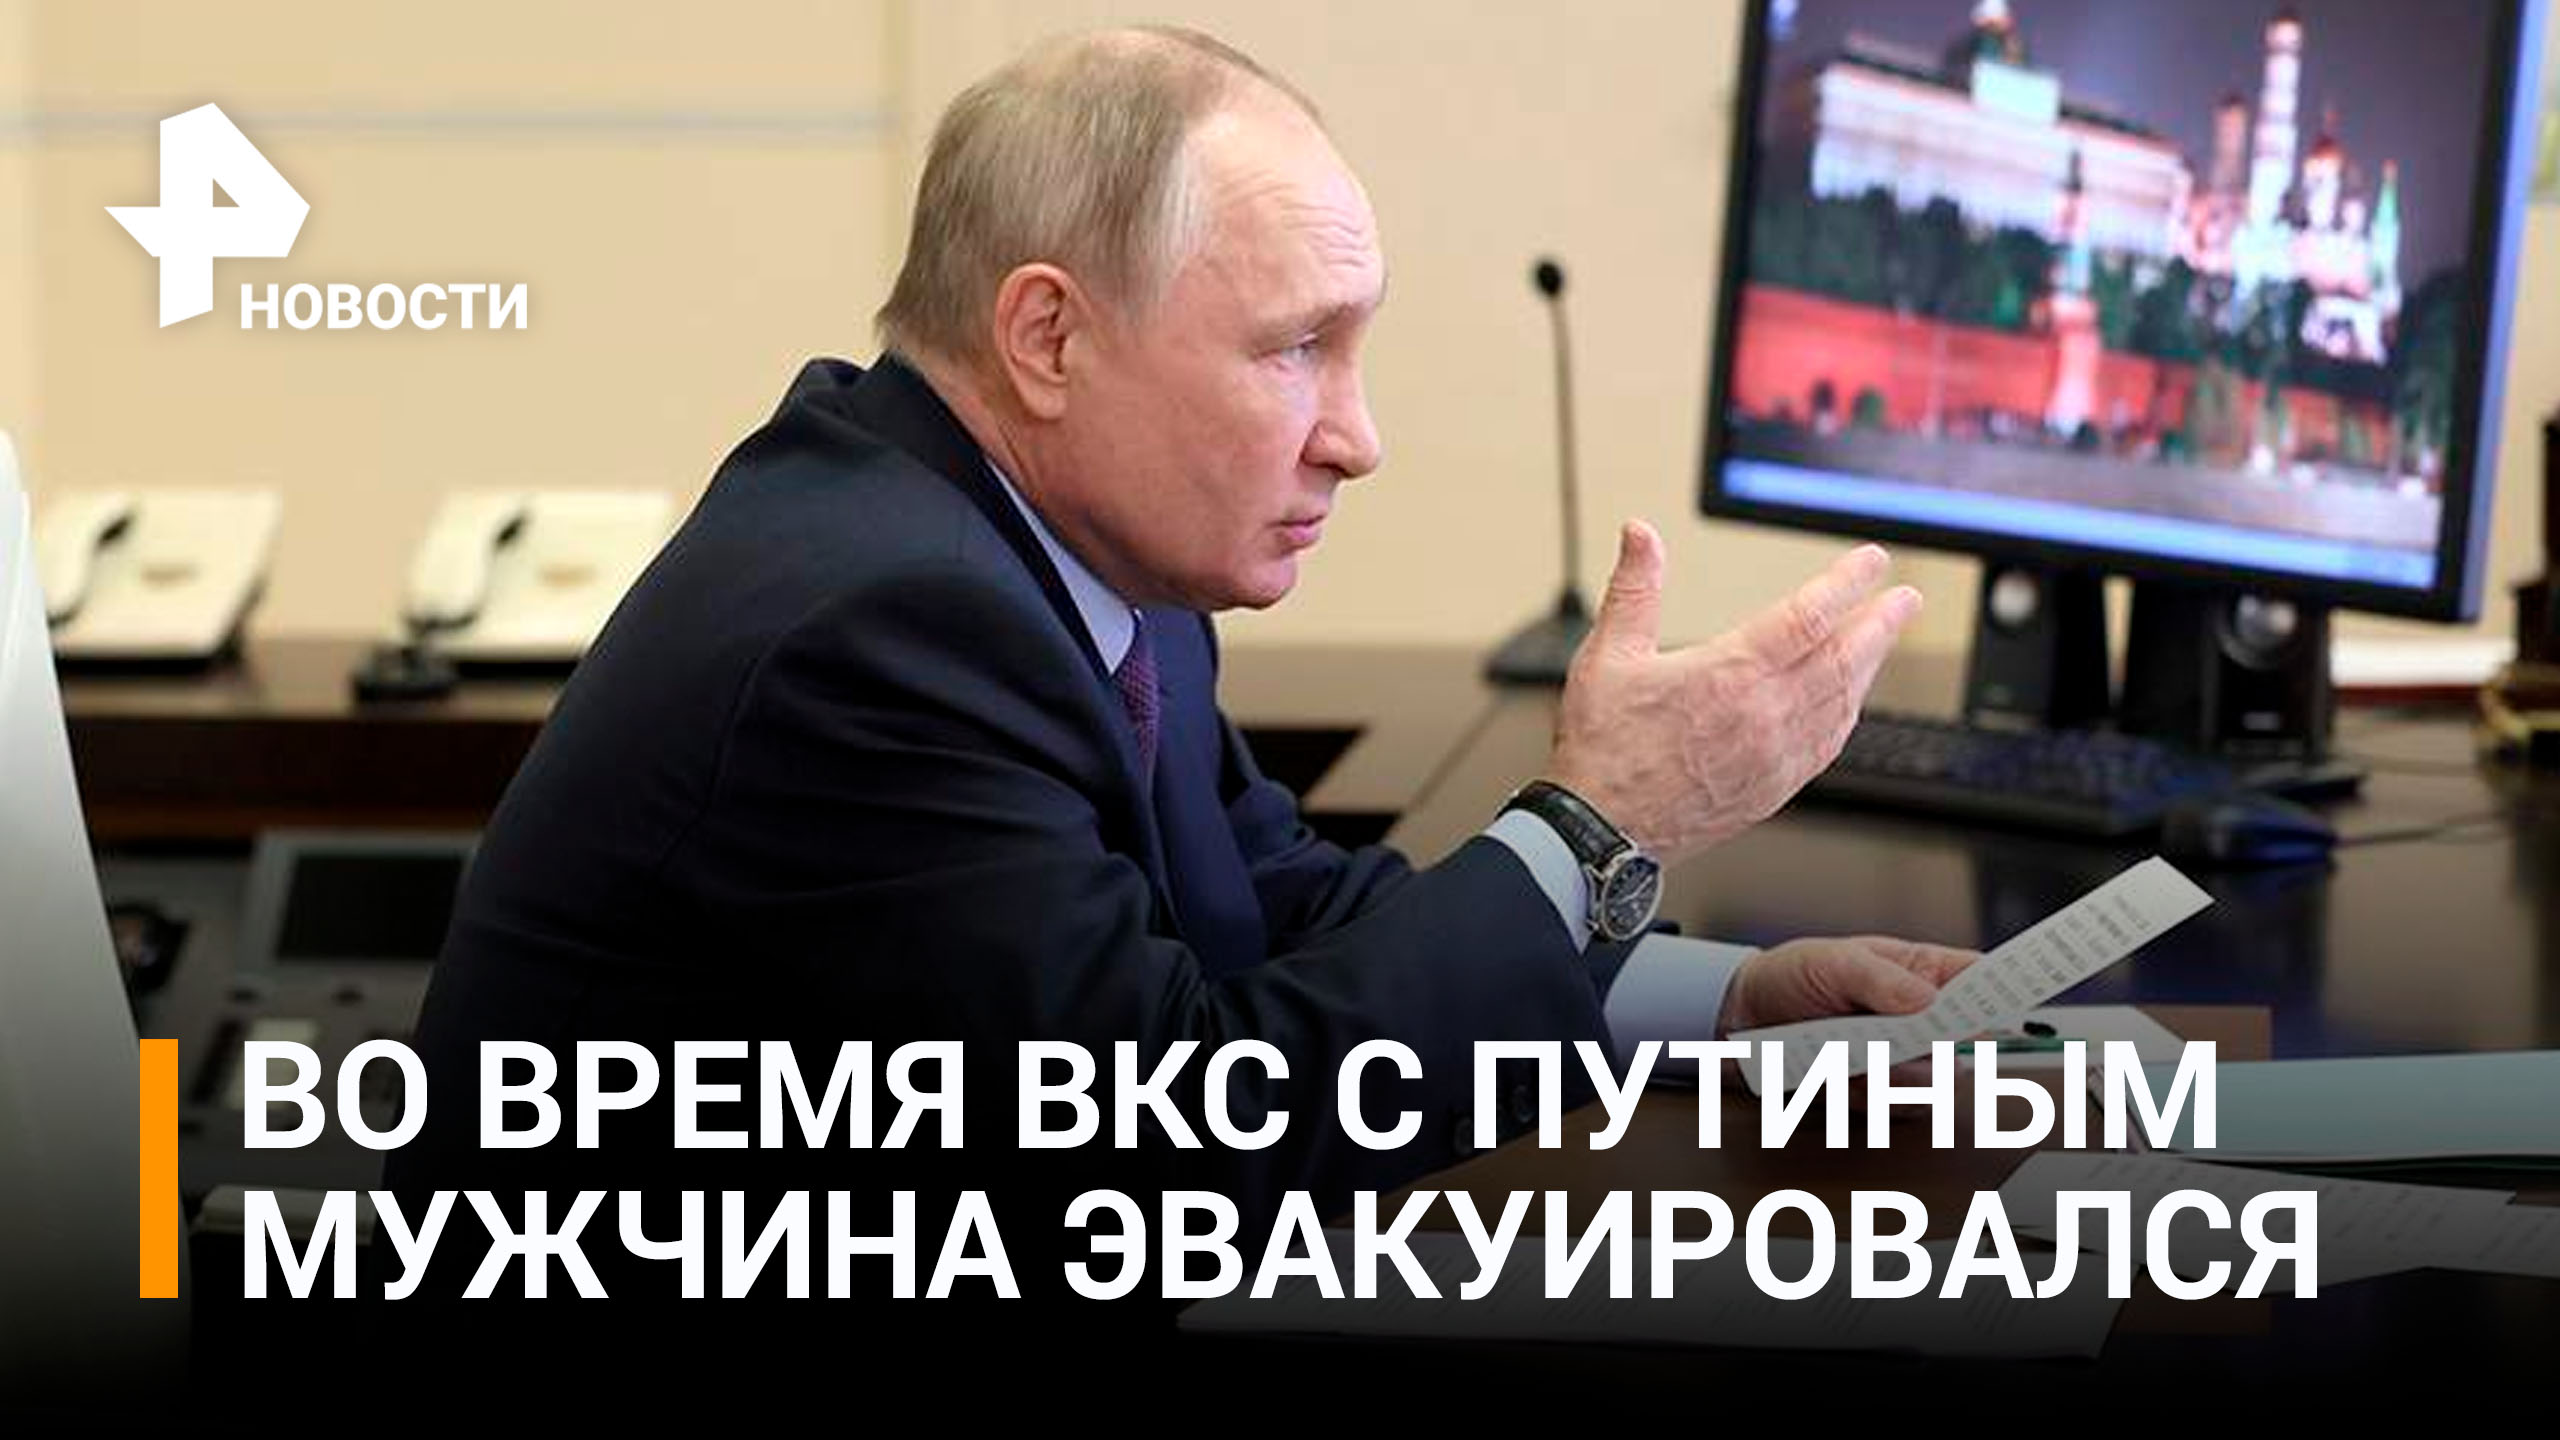 Путин пообещал выделить средства на санатории для глухих / РЕН Новости